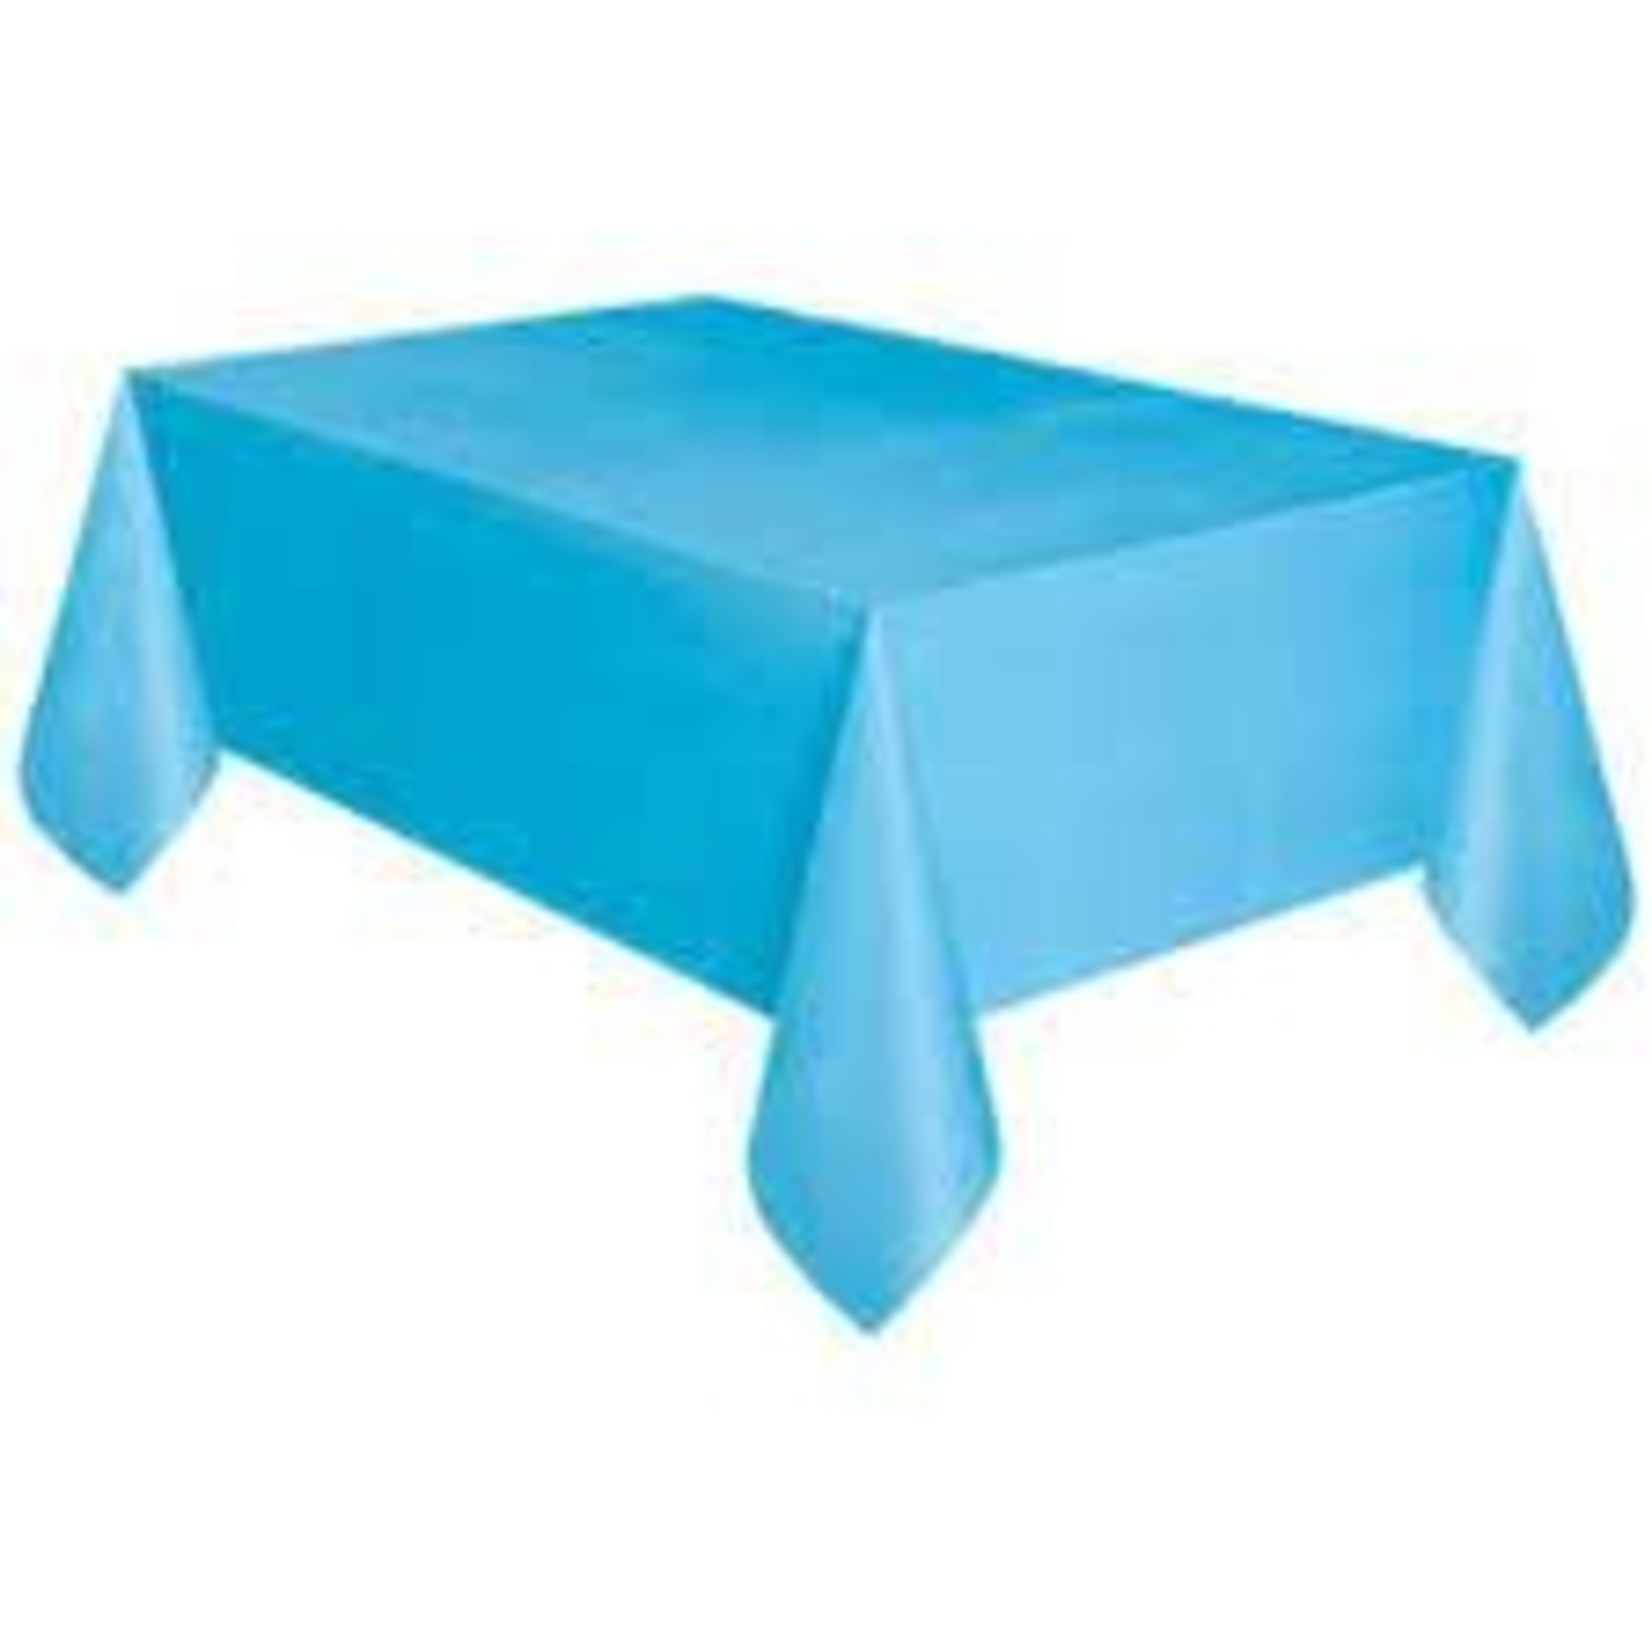 Light Blue Table Cover rectangular